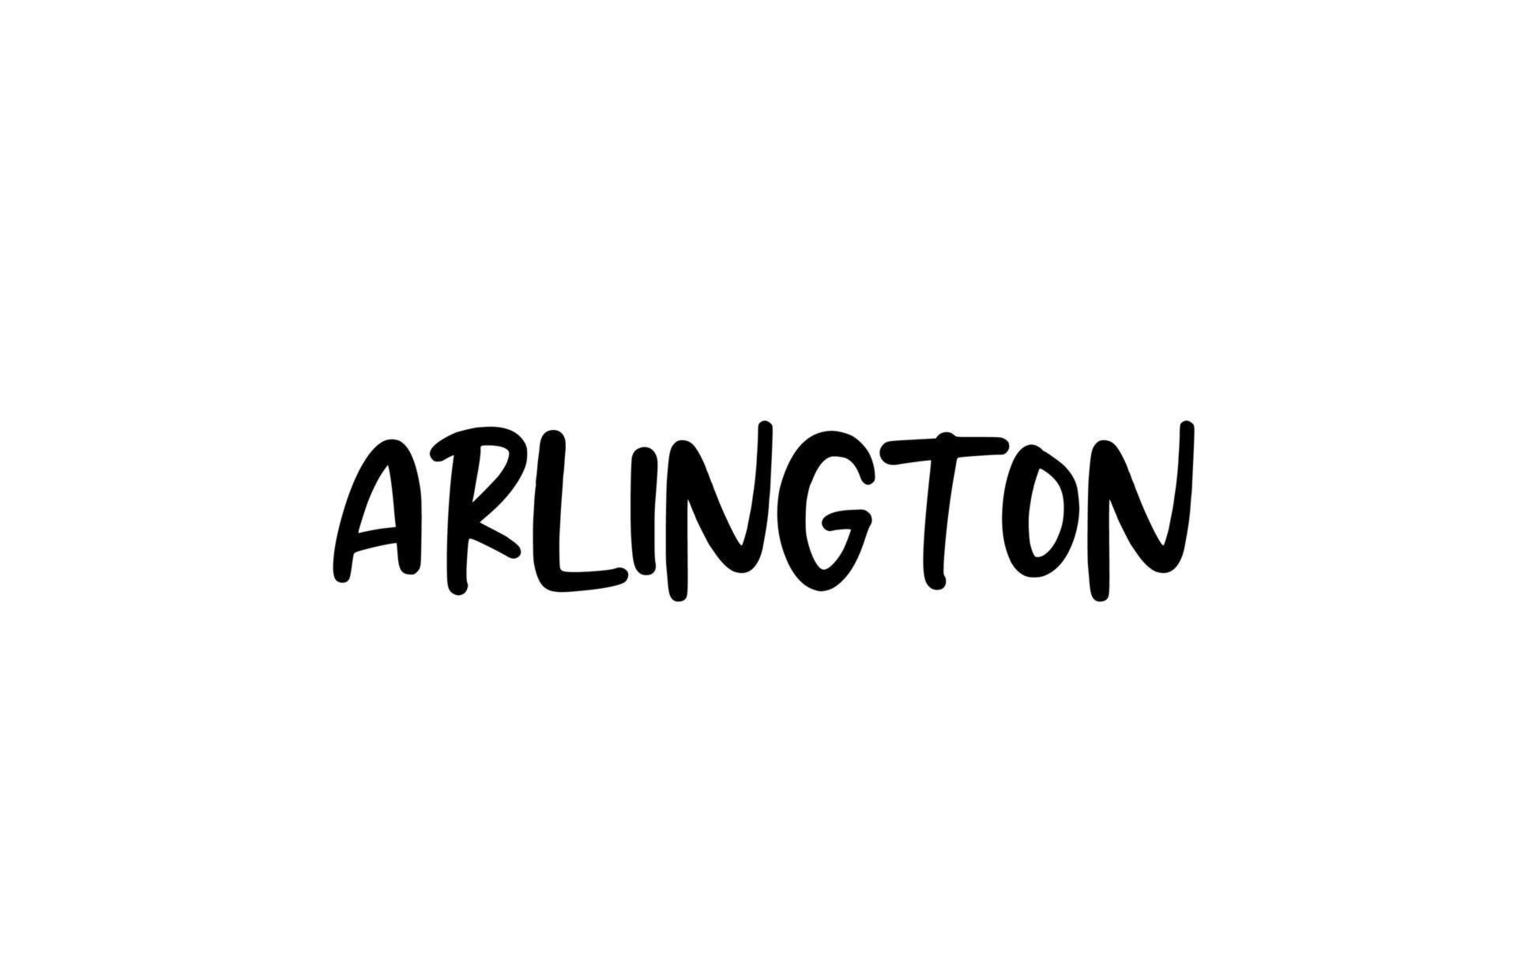 Arlington city typographie manuscrite mot texte lettrage à la main. texte de calligraphie moderne. couleur noire vecteur